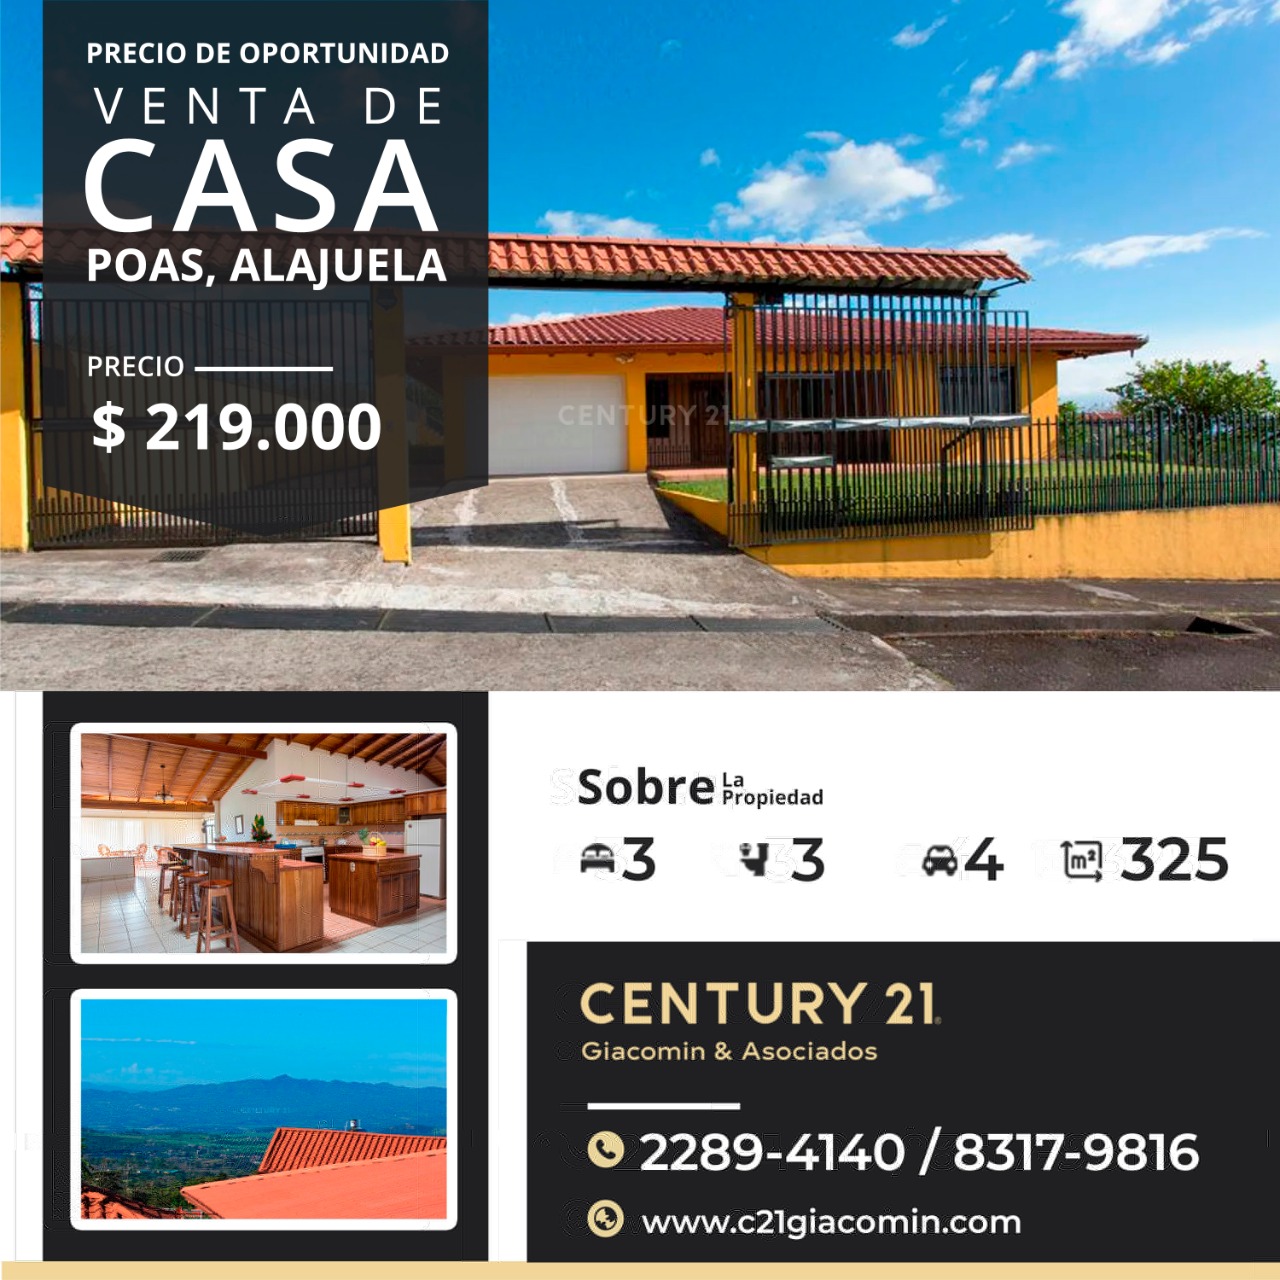 Venta de bella casa en Poas Alajuela, con vistas espectaculares!